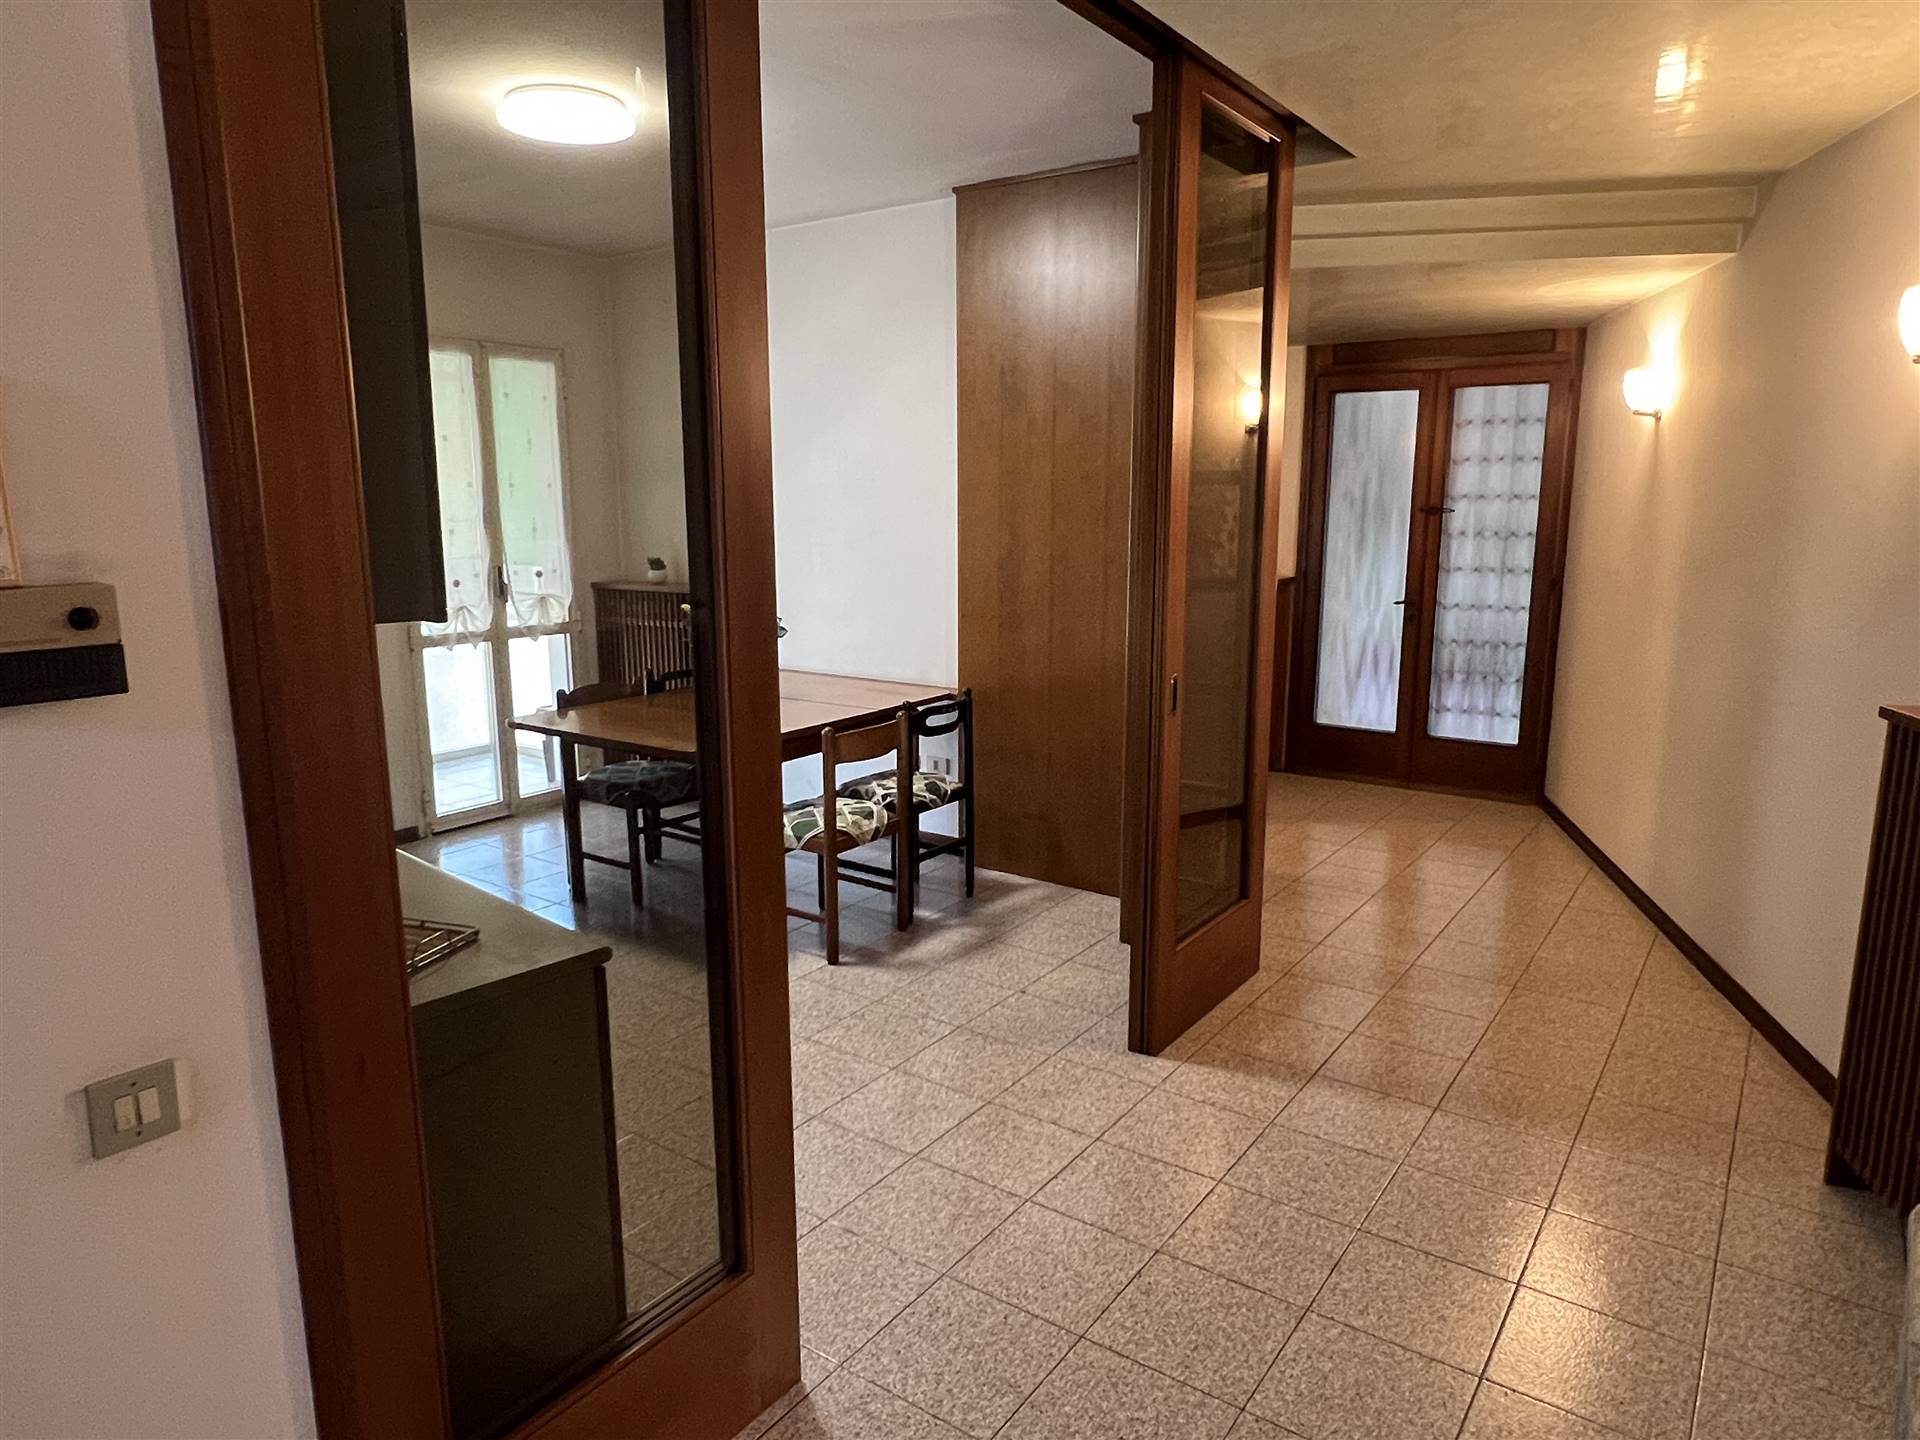 Appartamento in vendita a Limena, 3 locali, prezzo € 120.000 | PortaleAgenzieImmobiliari.it